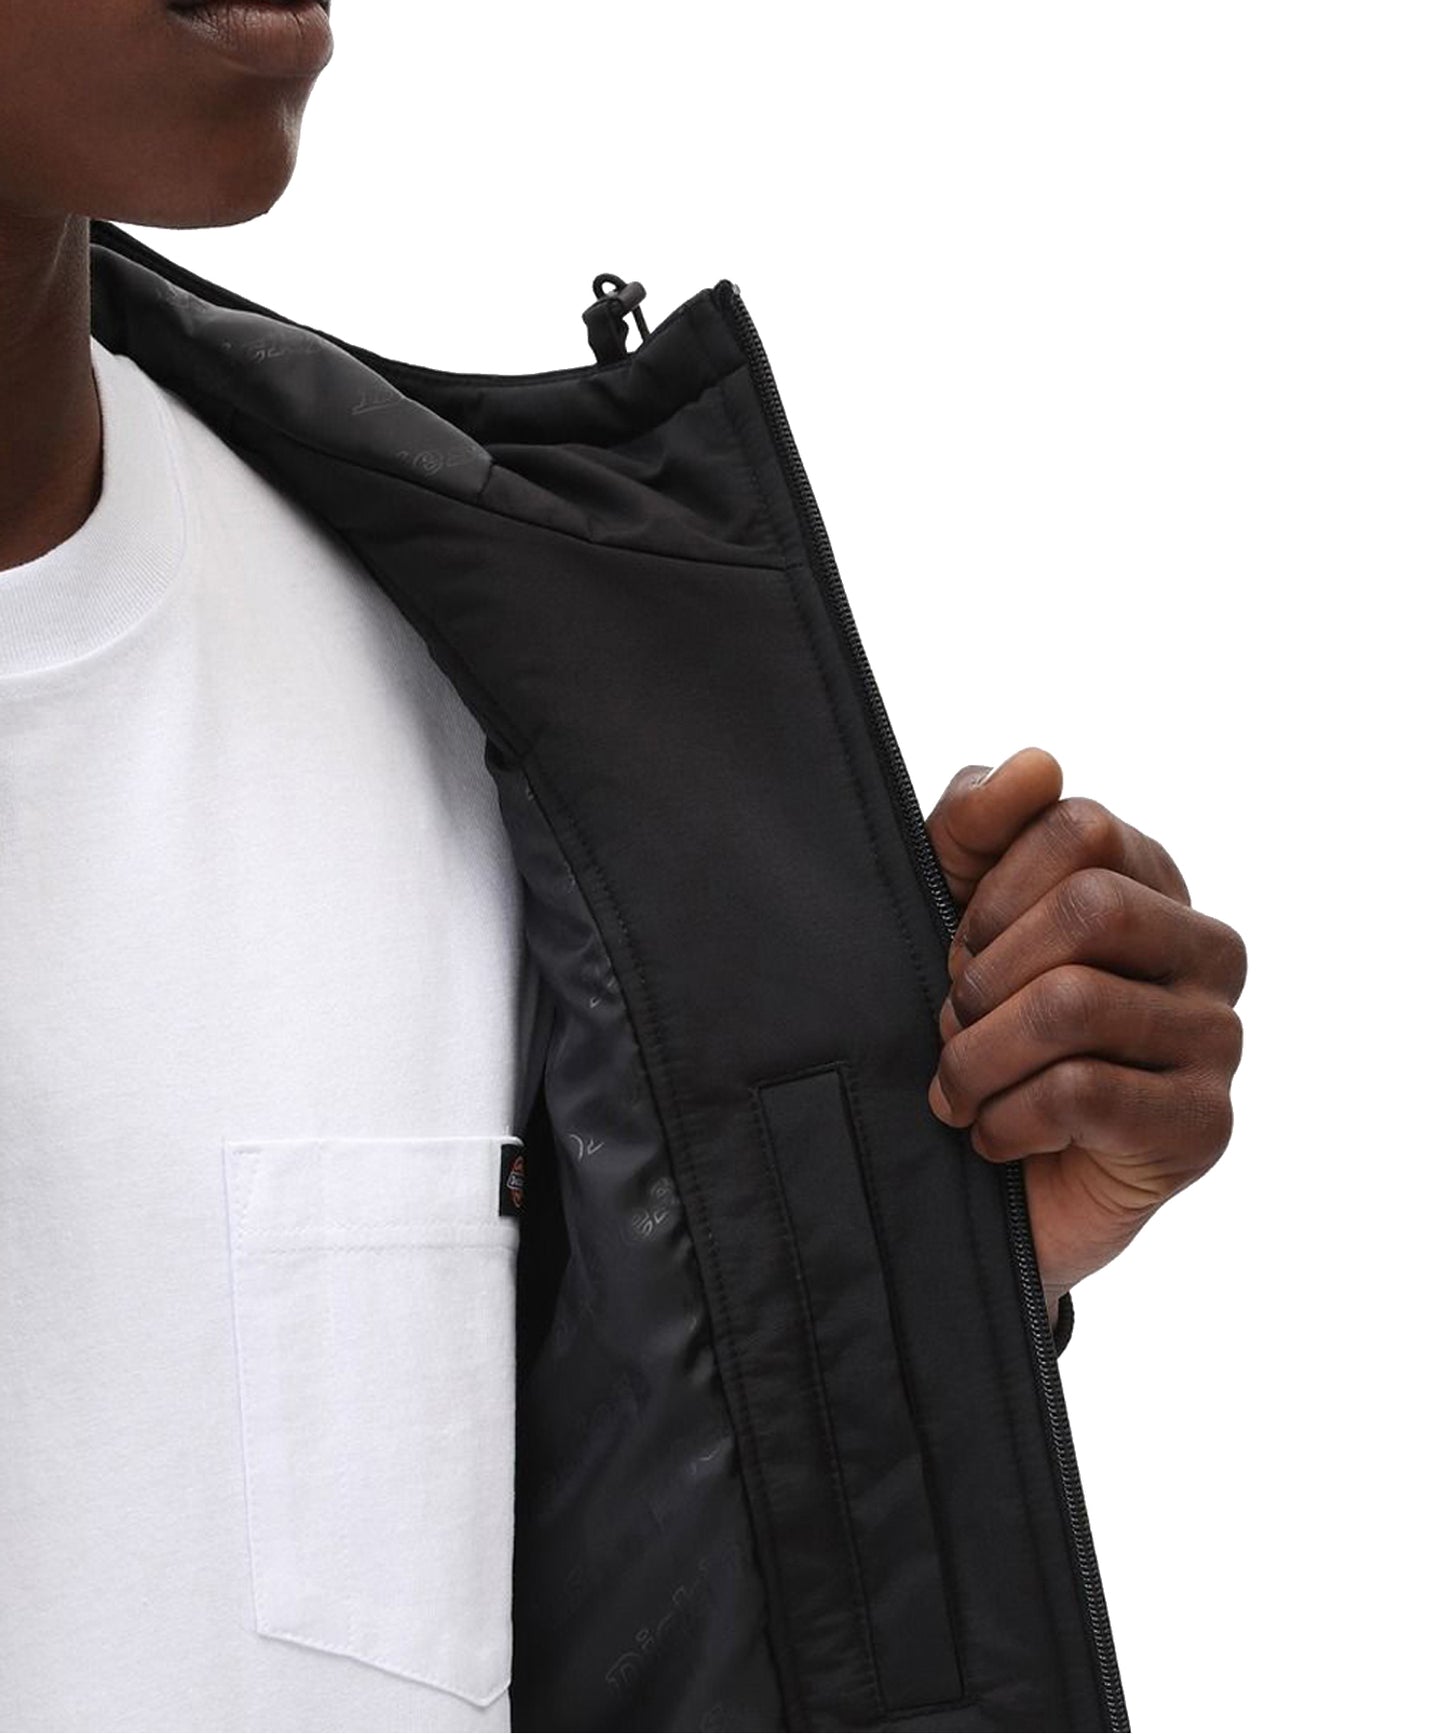 dickies chaqueta new sarpy de color negro con capucha-forrada-logo dickies en el pecho-resistente al agua.-100%poliéster